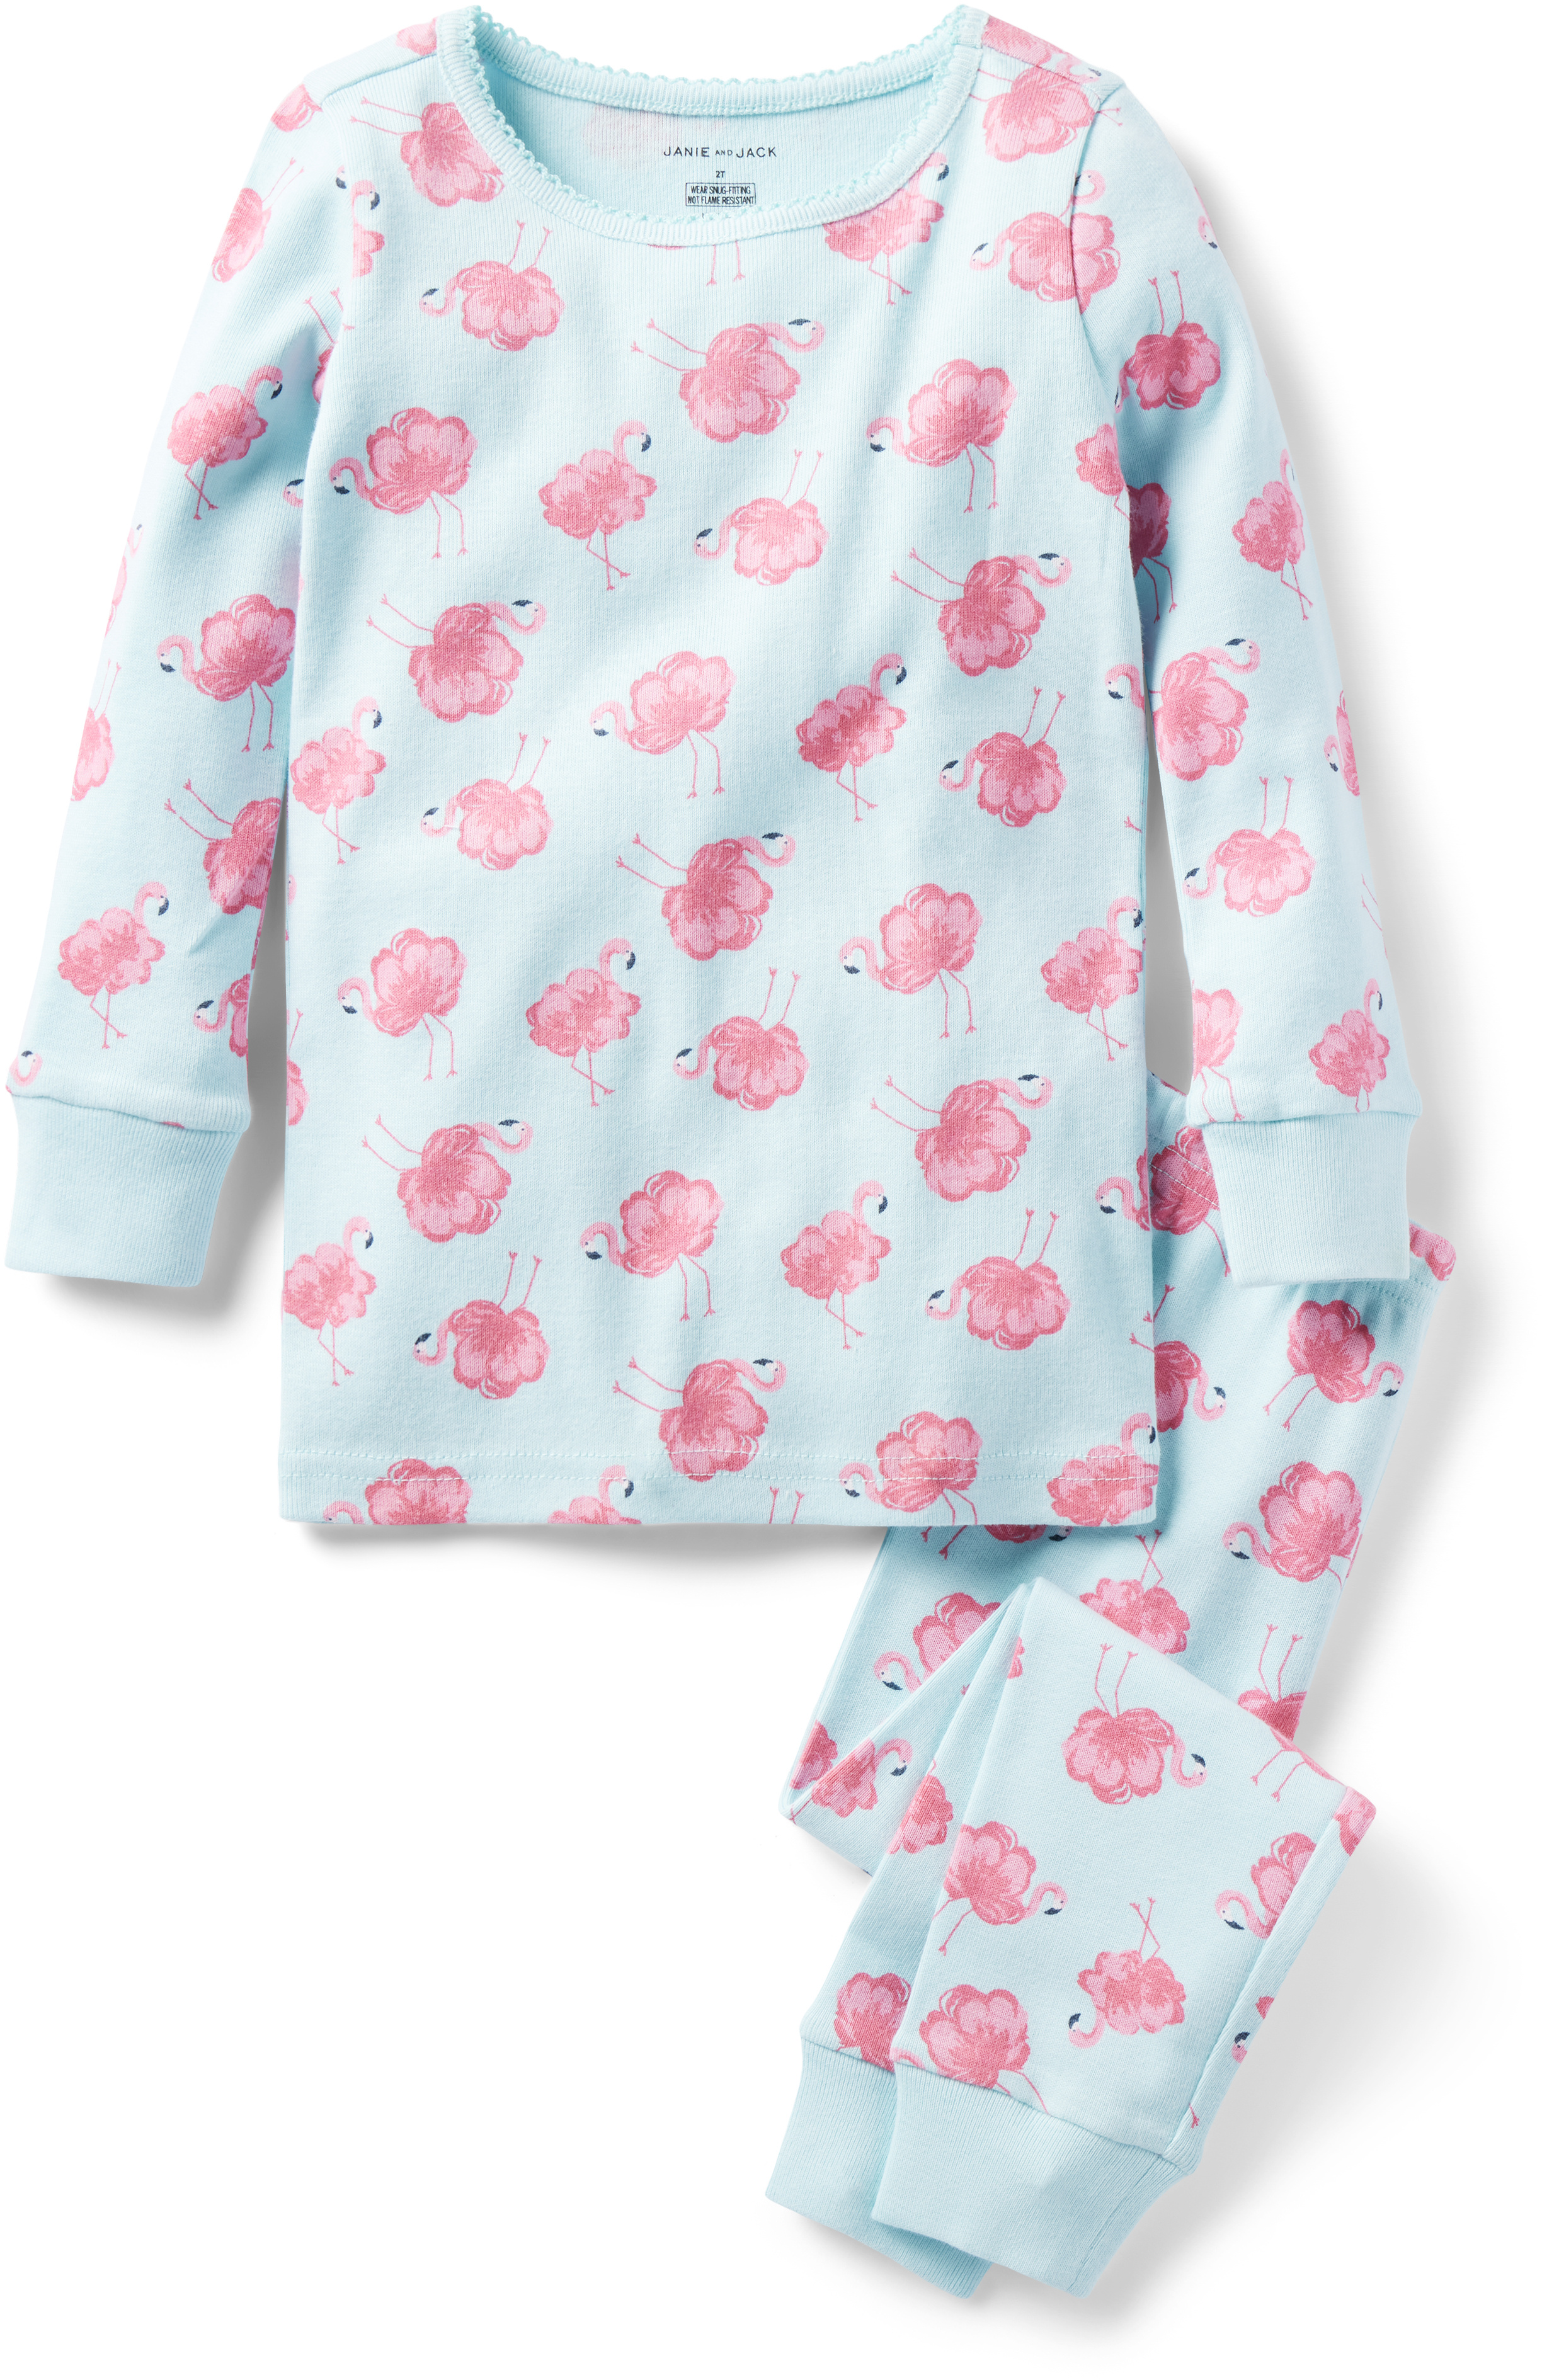 Обтягивающая одежда для сна с принтом фламинго (для малышей/маленьких детей/больших детей) Janie and Jack